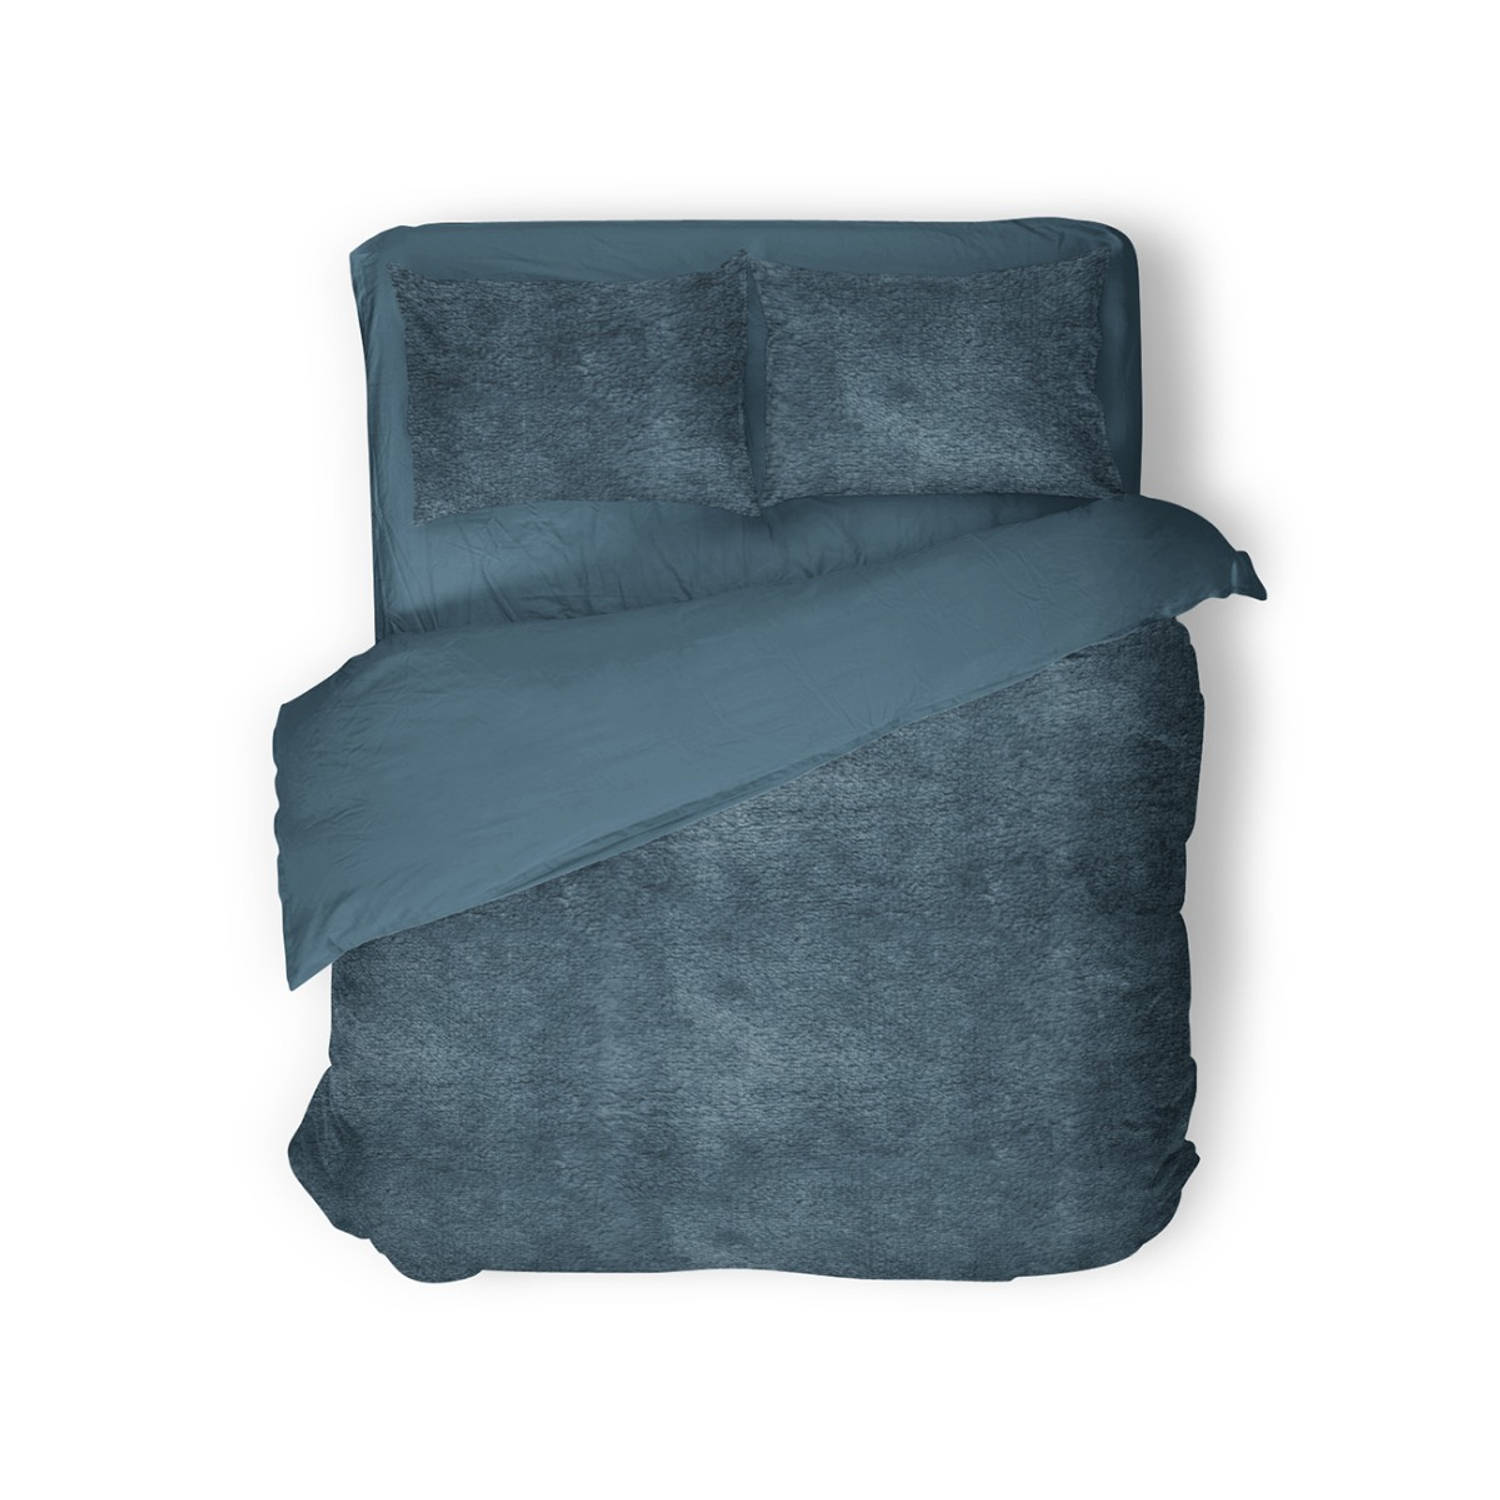 Eleganzzz Dekbedovertrek Flanel Fleece - Steel Blue - Dekbedovertrek 240x200/220cm - 100% flanel fleece - Lits Jumeaux dekbedovertrekken